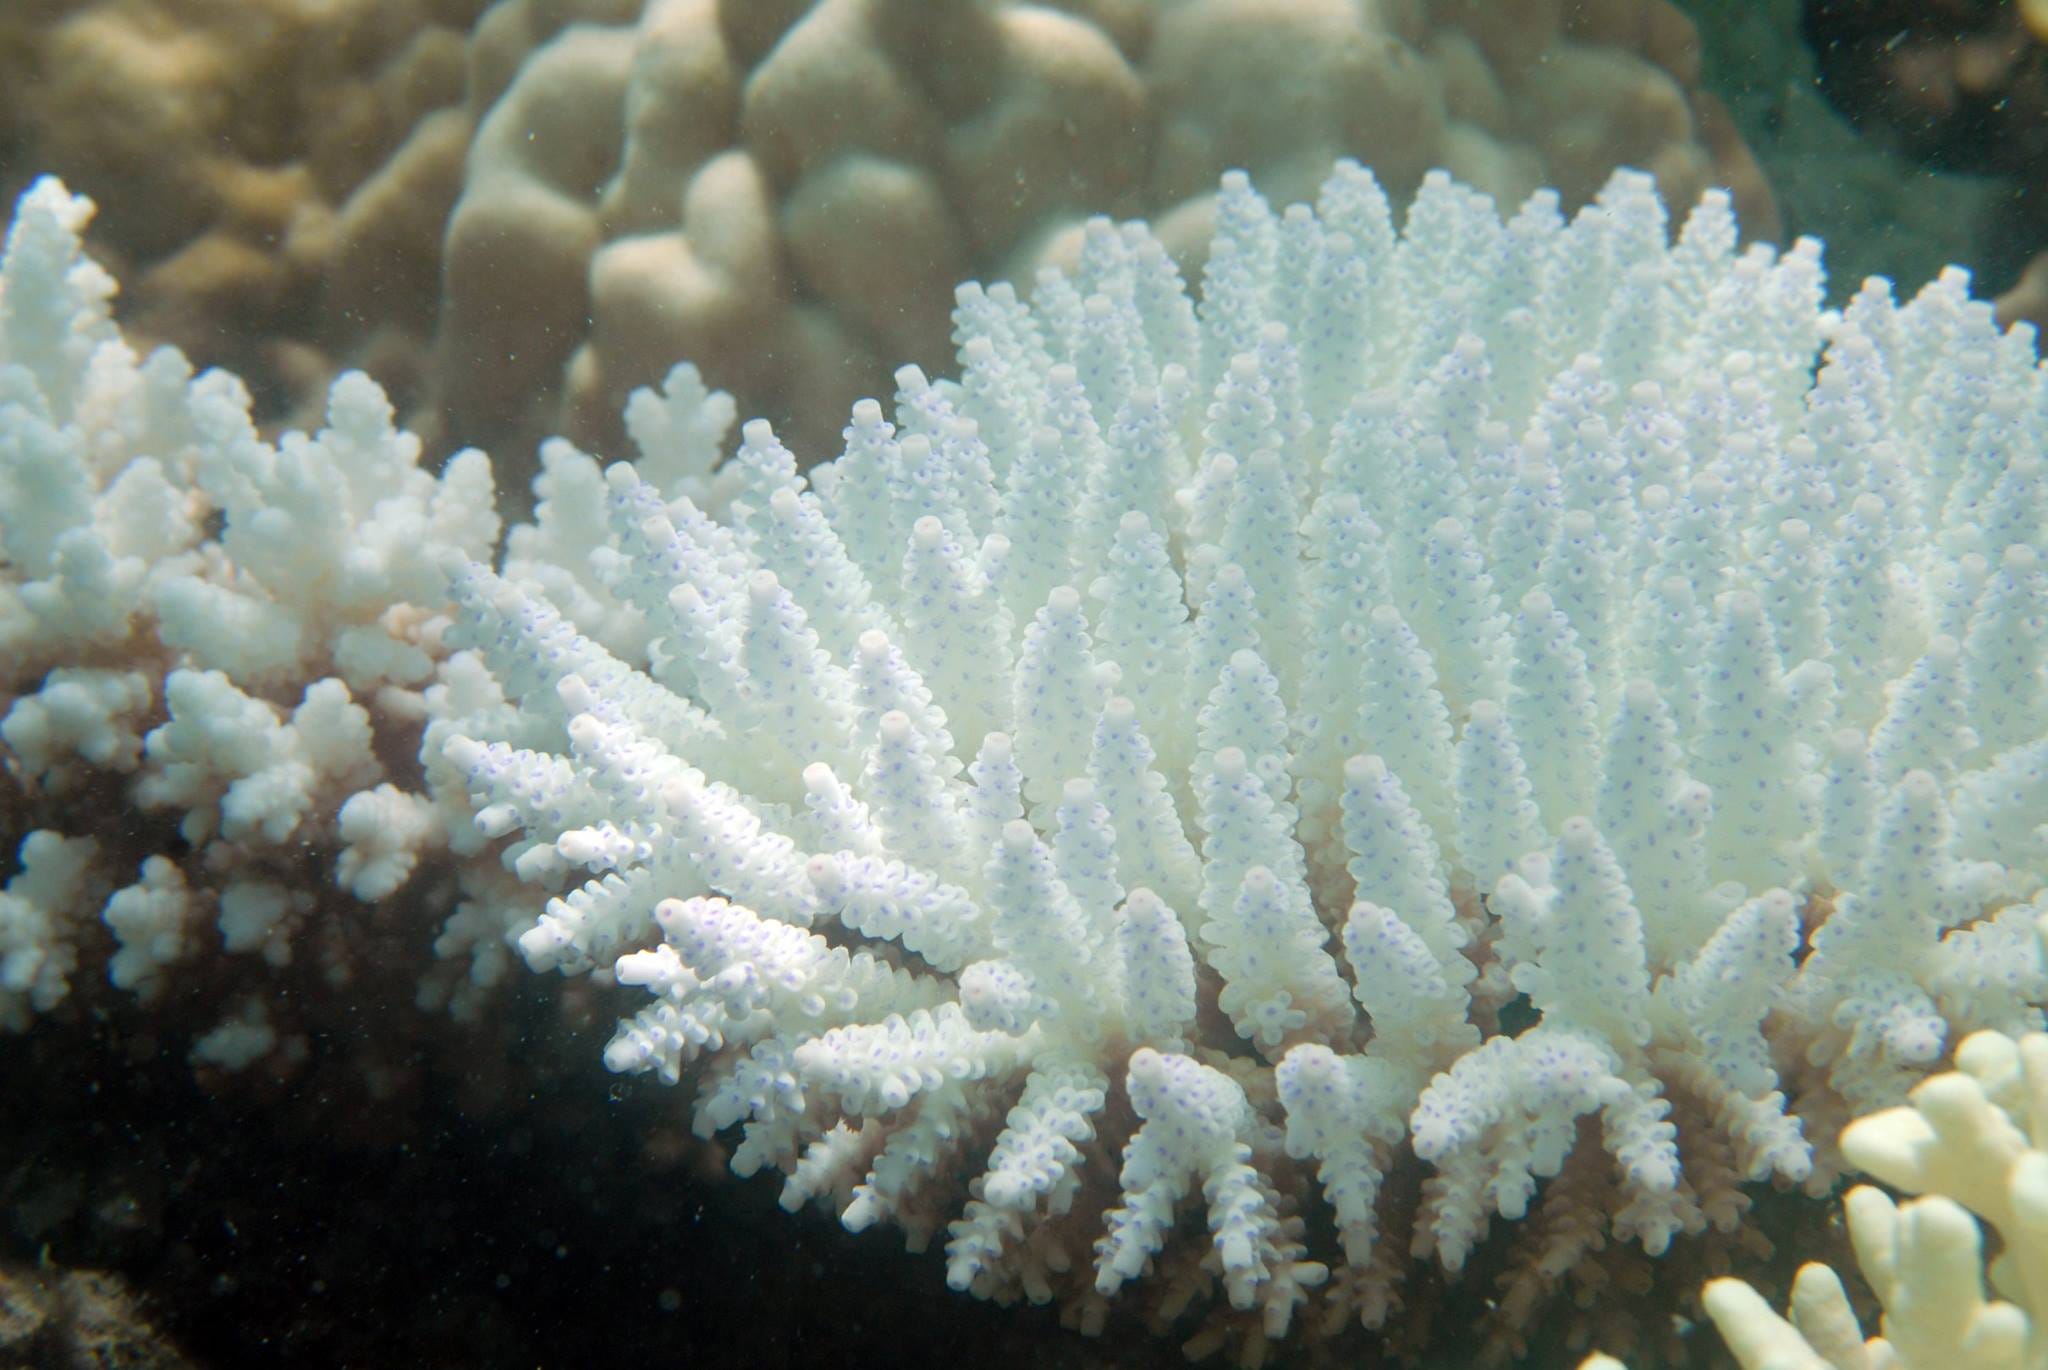 演講筆記 用公民科學紀錄珊瑚白化 珊瑚觀察 Coralwatch 計畫 By 顏寧 Medium